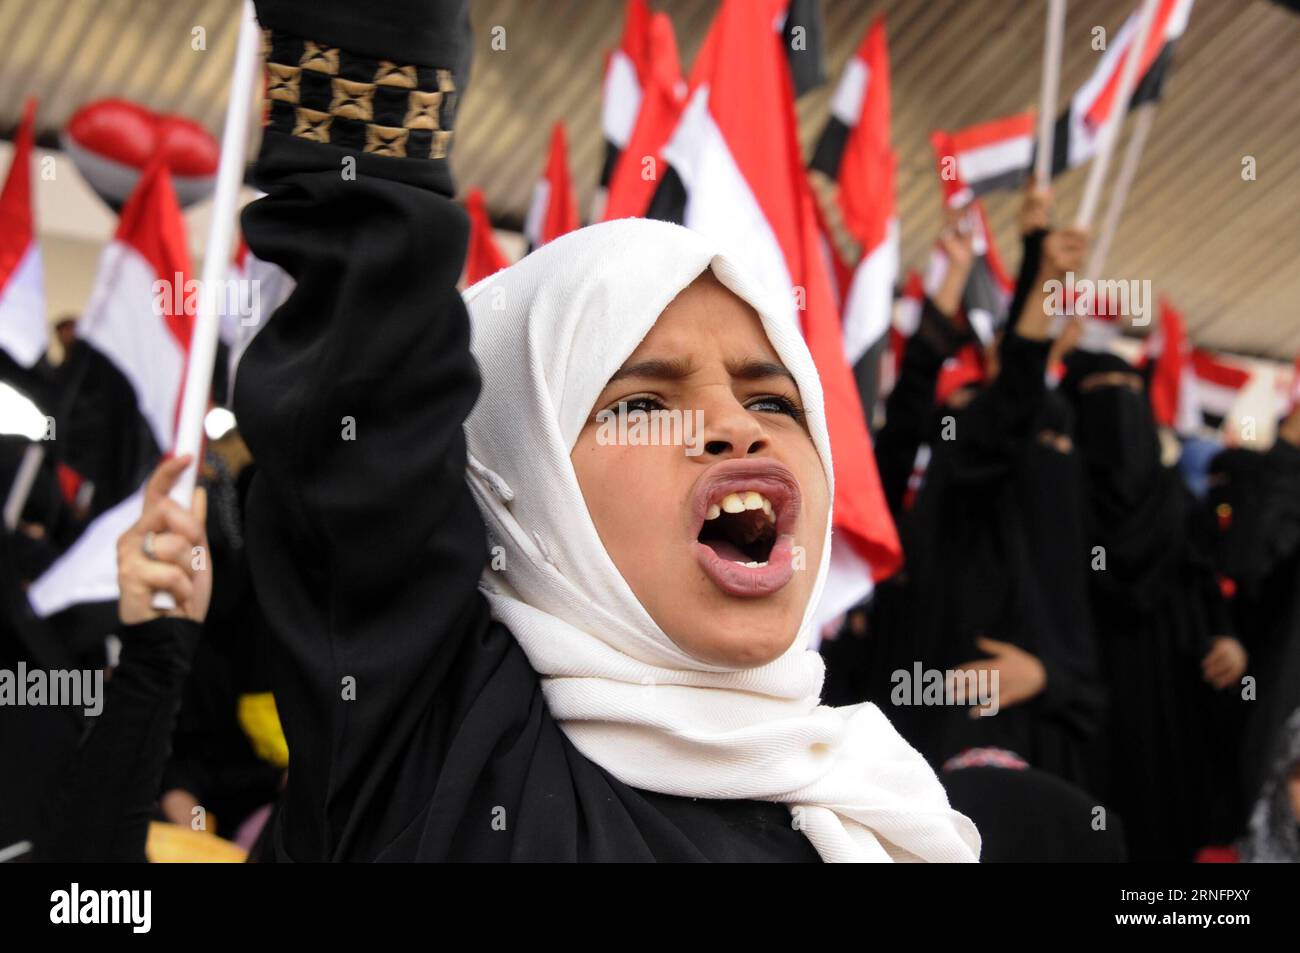 (160821) -- SANAA, 20. August 2016 -- Ein Mädchen schreit Parolen während einer Kundgebung, um Unterstützung für einen politischen rat in Sanaa, Jemen, 20. August 2016 zu zeigen. Millionen von Menschen aus allen jemenitischen Gebieten drängten sich am Samstag im Zentrum der jemenitischen Hauptstadt Sanaa, um die Bildung eines neuen regierenden politischen rates unter dem Vorsitz der Huthi-Rebellen und ihrer verbündeten mächtigen Partei des ehemaligen Präsidenten Ali Abdullah Saleh zu unterstützen und zu segnen. )(zcc) YEMEN-SANAA-RALLY HanixAli PUBLICATIONxNOTxINxCHN 160821 Sanaa 20. August 2016 ein Mädchen brüllt Parolen während einer Rallye, um Unterstützung für einen politischen Rat in Sanaa Jemen zu zeigen Stockfoto